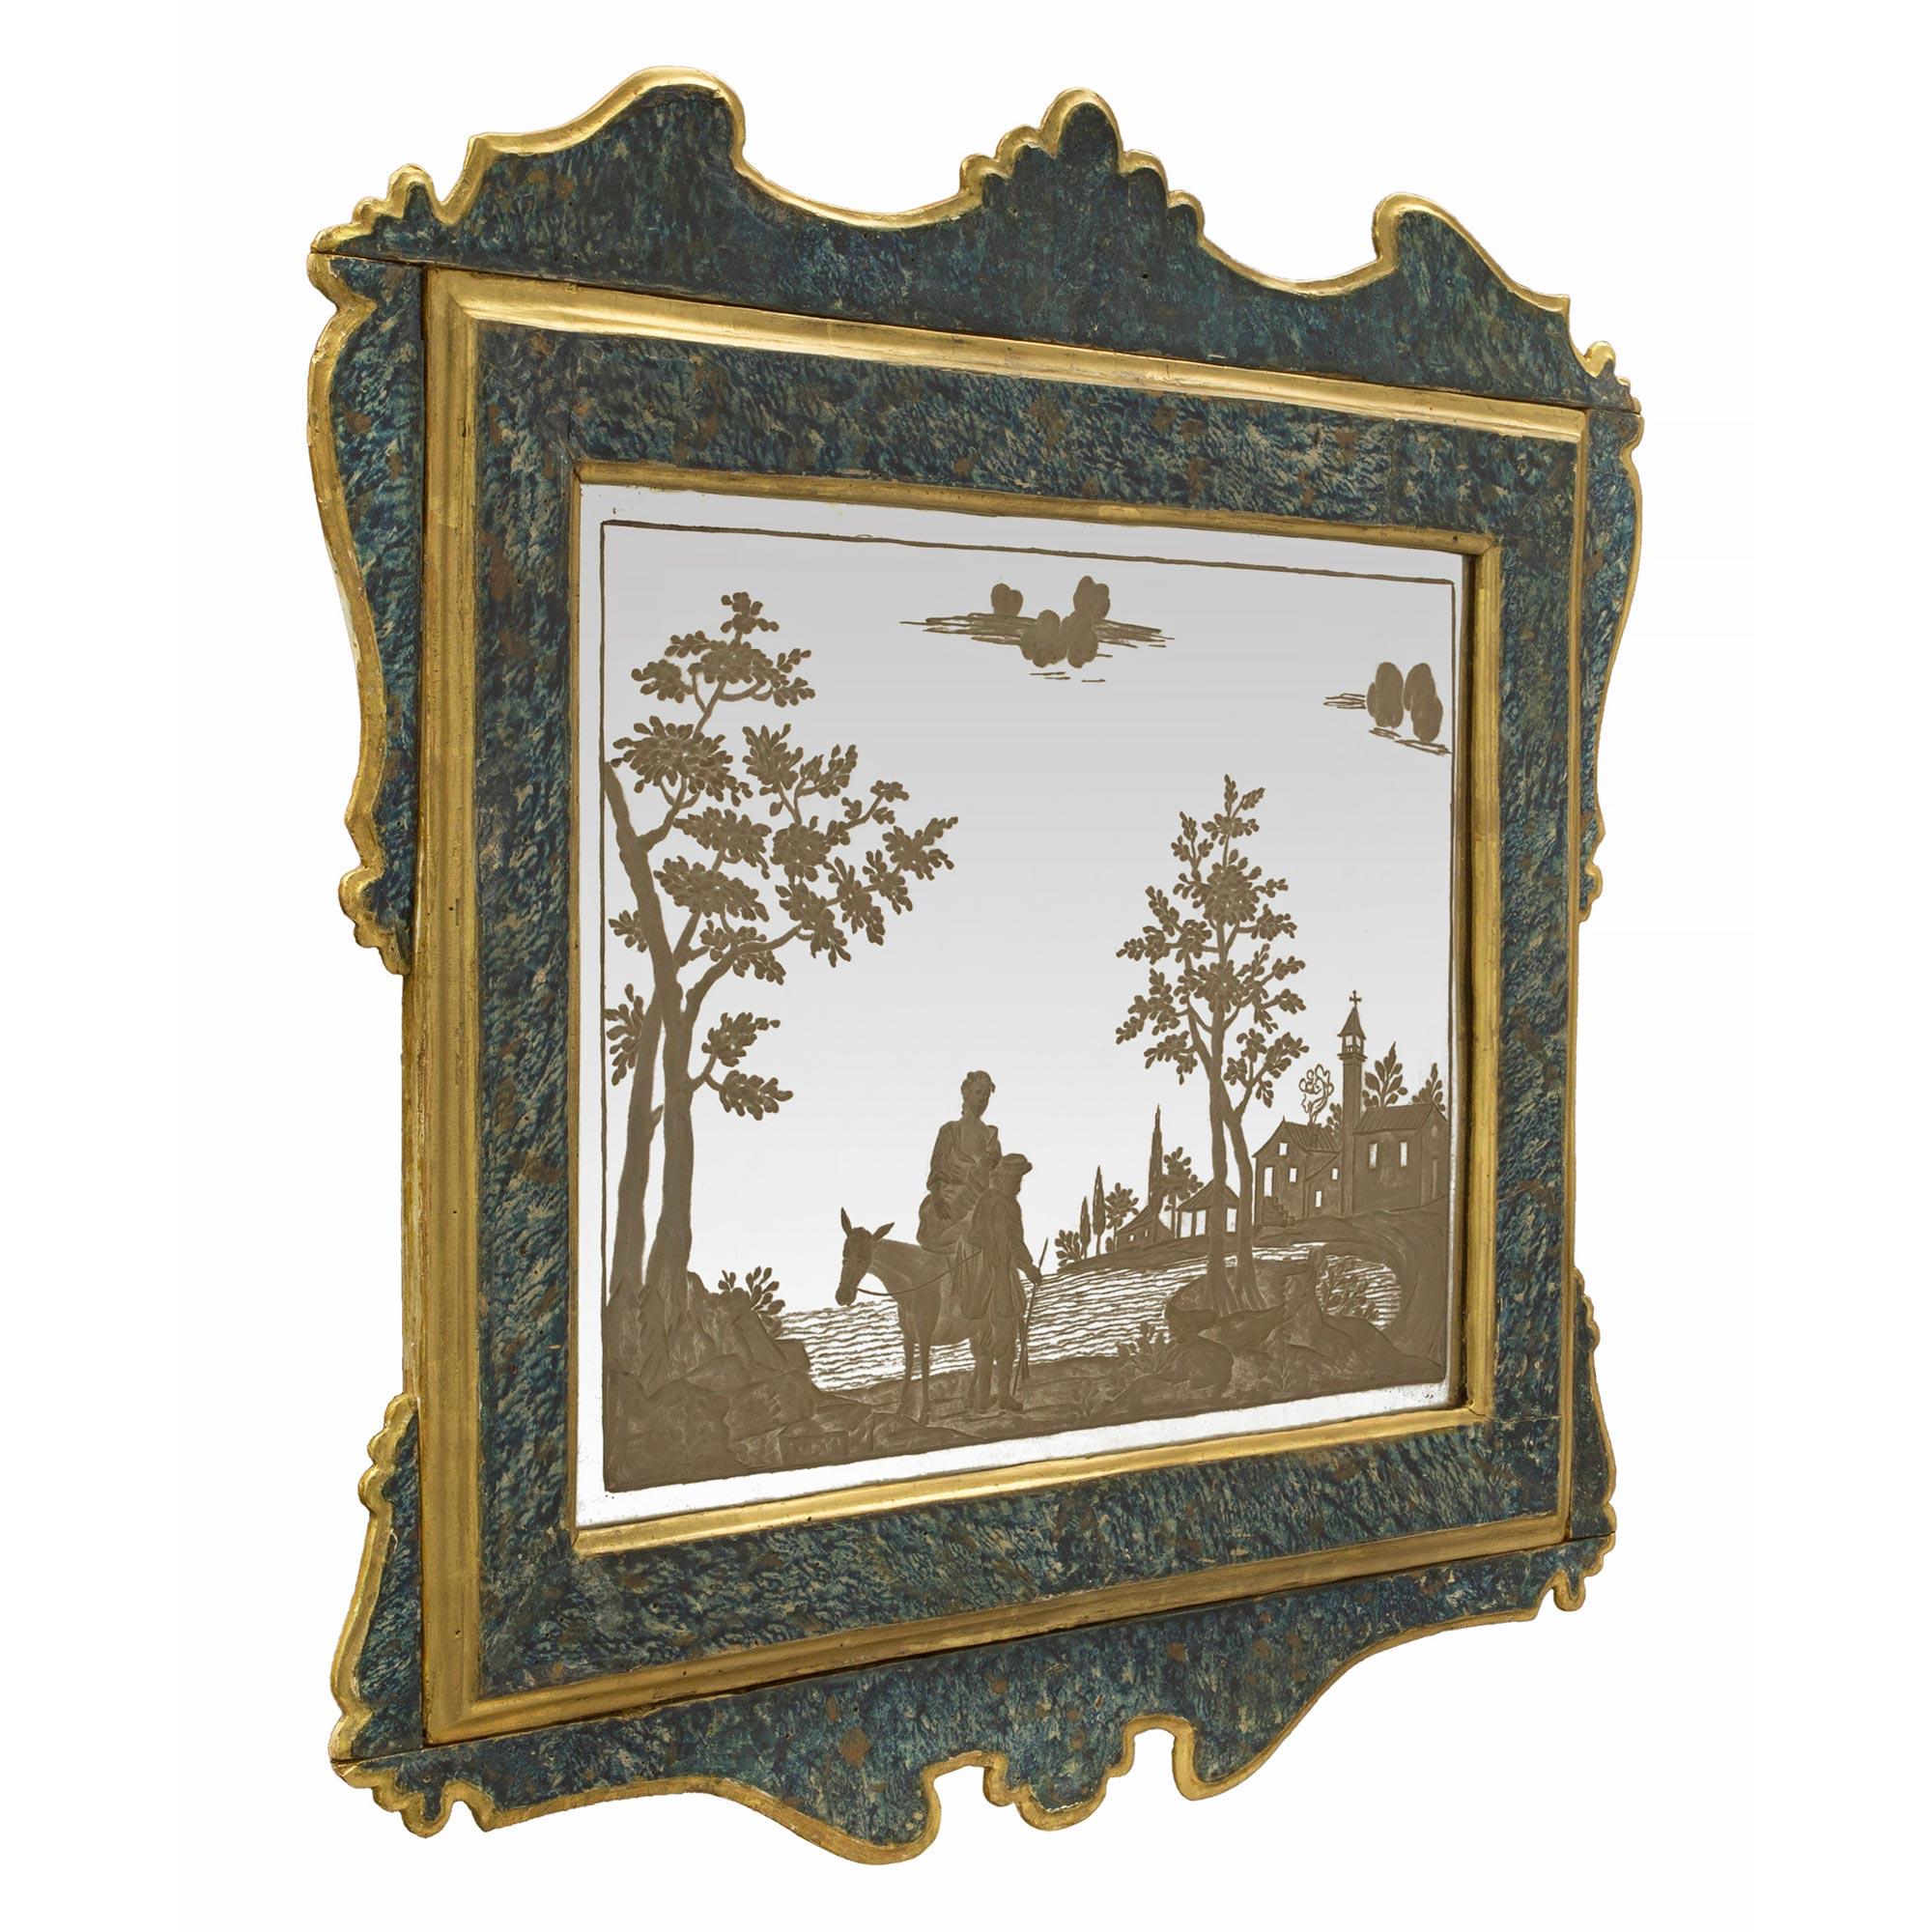 Une charmante et très décorative paire de miroirs polychromes italiens du 19ème siècle en miroir gravé et en écaille de tortue bleue peinte. Les magnifiques cadres d'origine présentent un motif d'écaille de tortue polychrome en faux peint